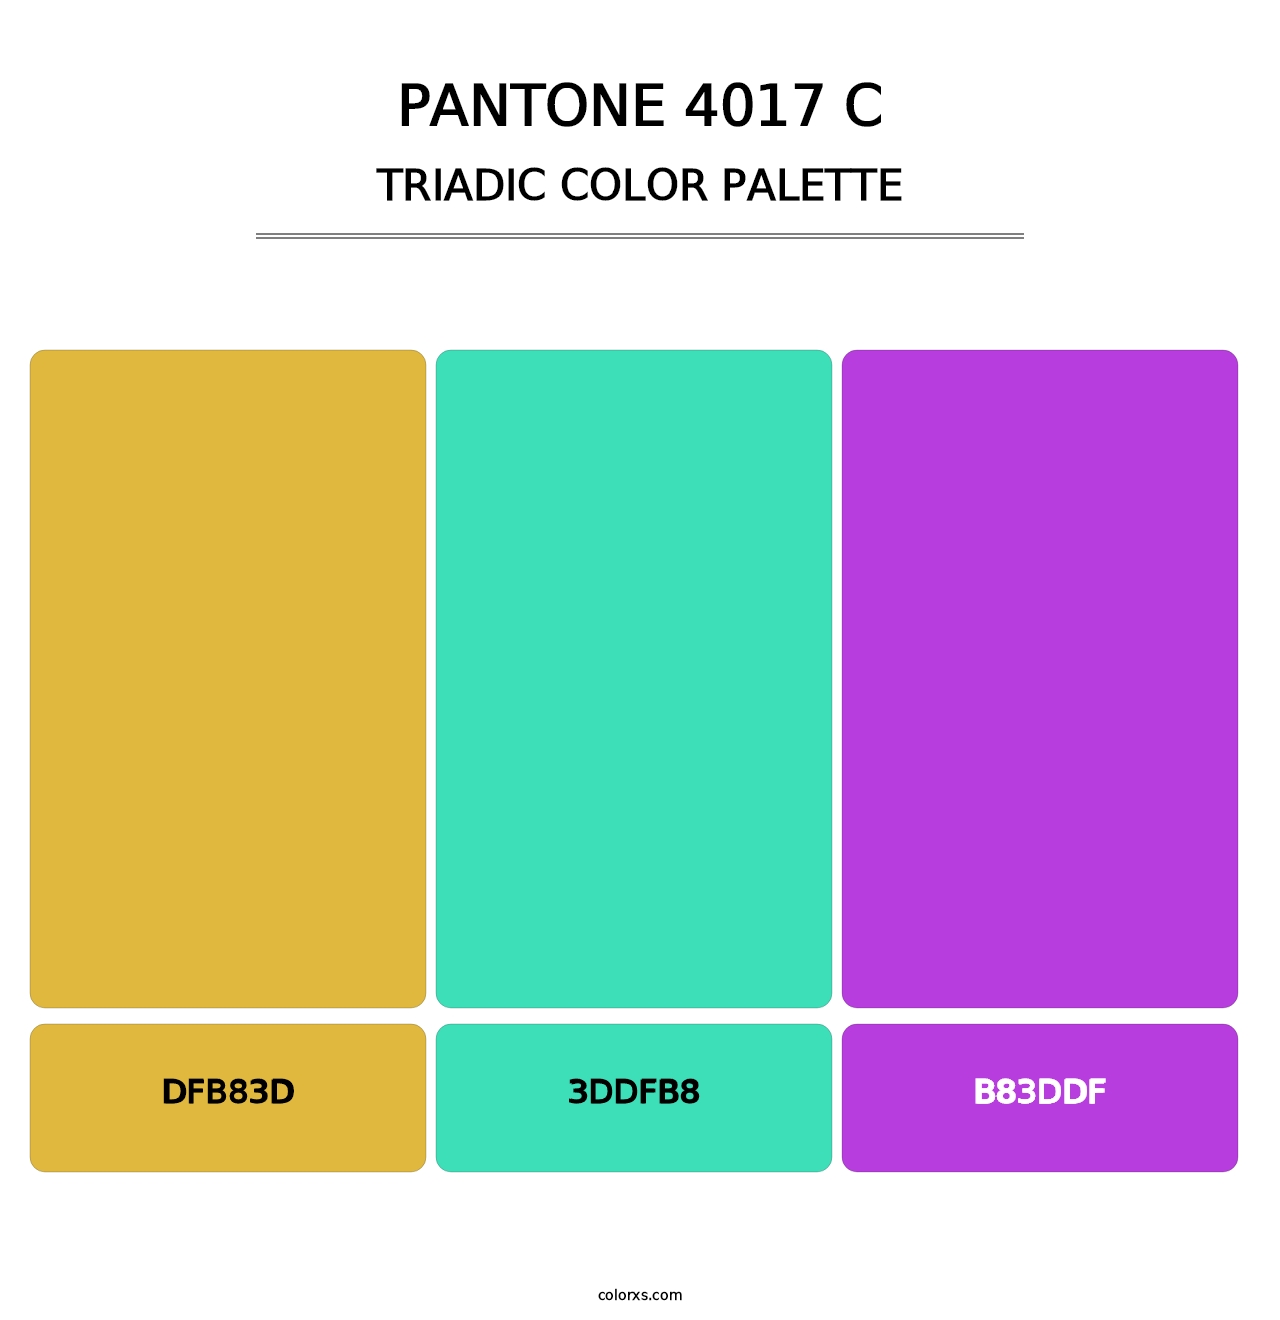 PANTONE 4017 C - Triadic Color Palette